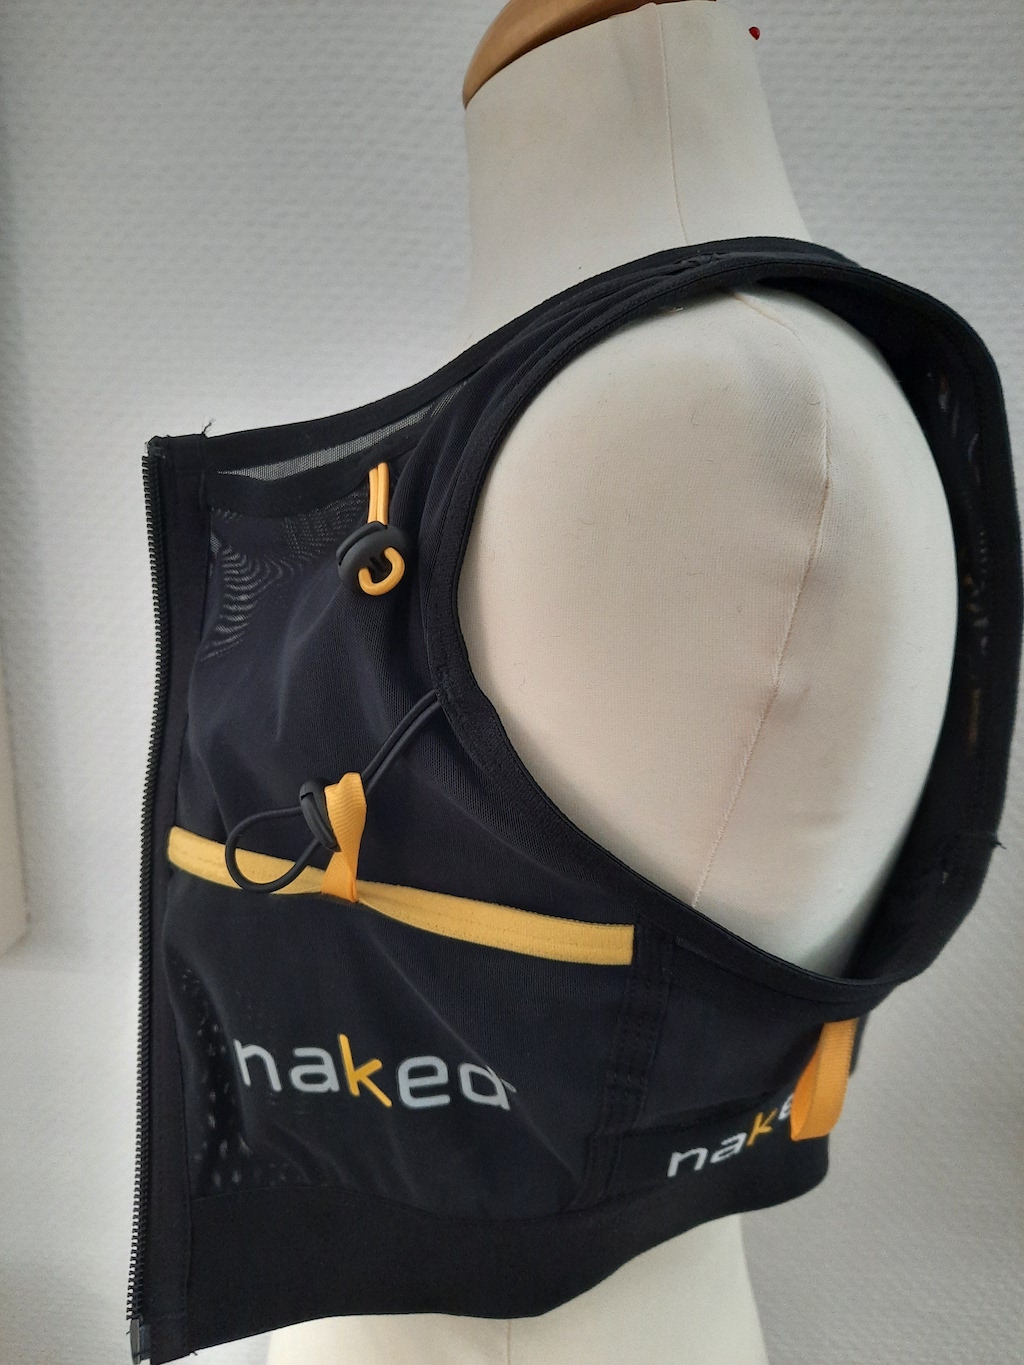 20210304_133834 - Naked Running Vest HC: Galerie - xc-run 